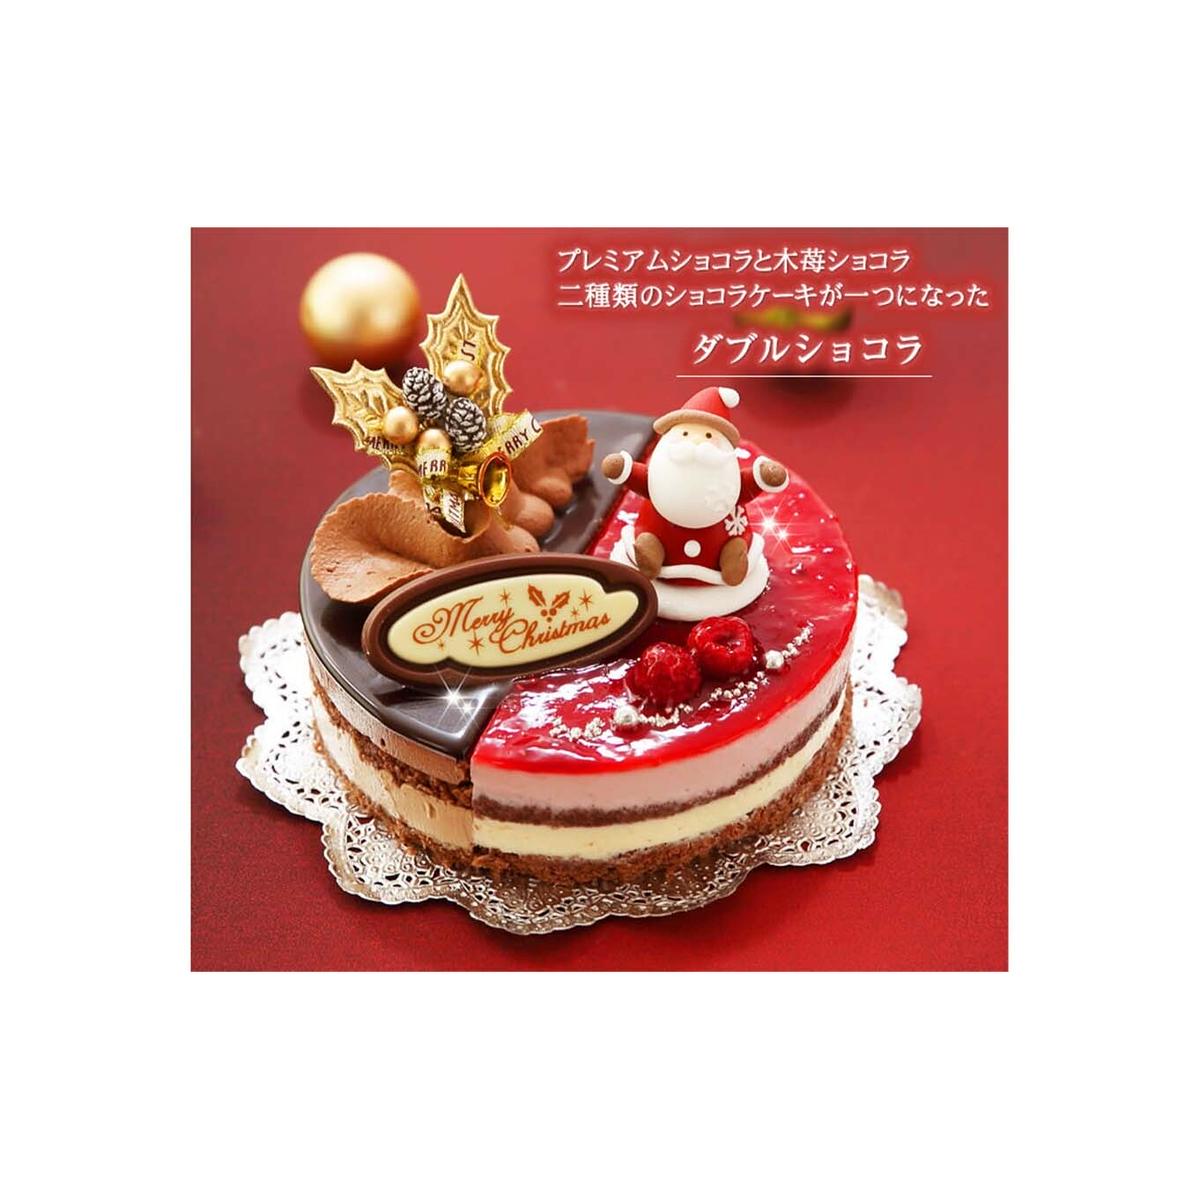 北海道・新ひだか町のクリスマスケーキ『ダブルショコラ』2つの味わい♪チョコレートケーキ[お届け予定:12/20〜12/24]冷凍発送